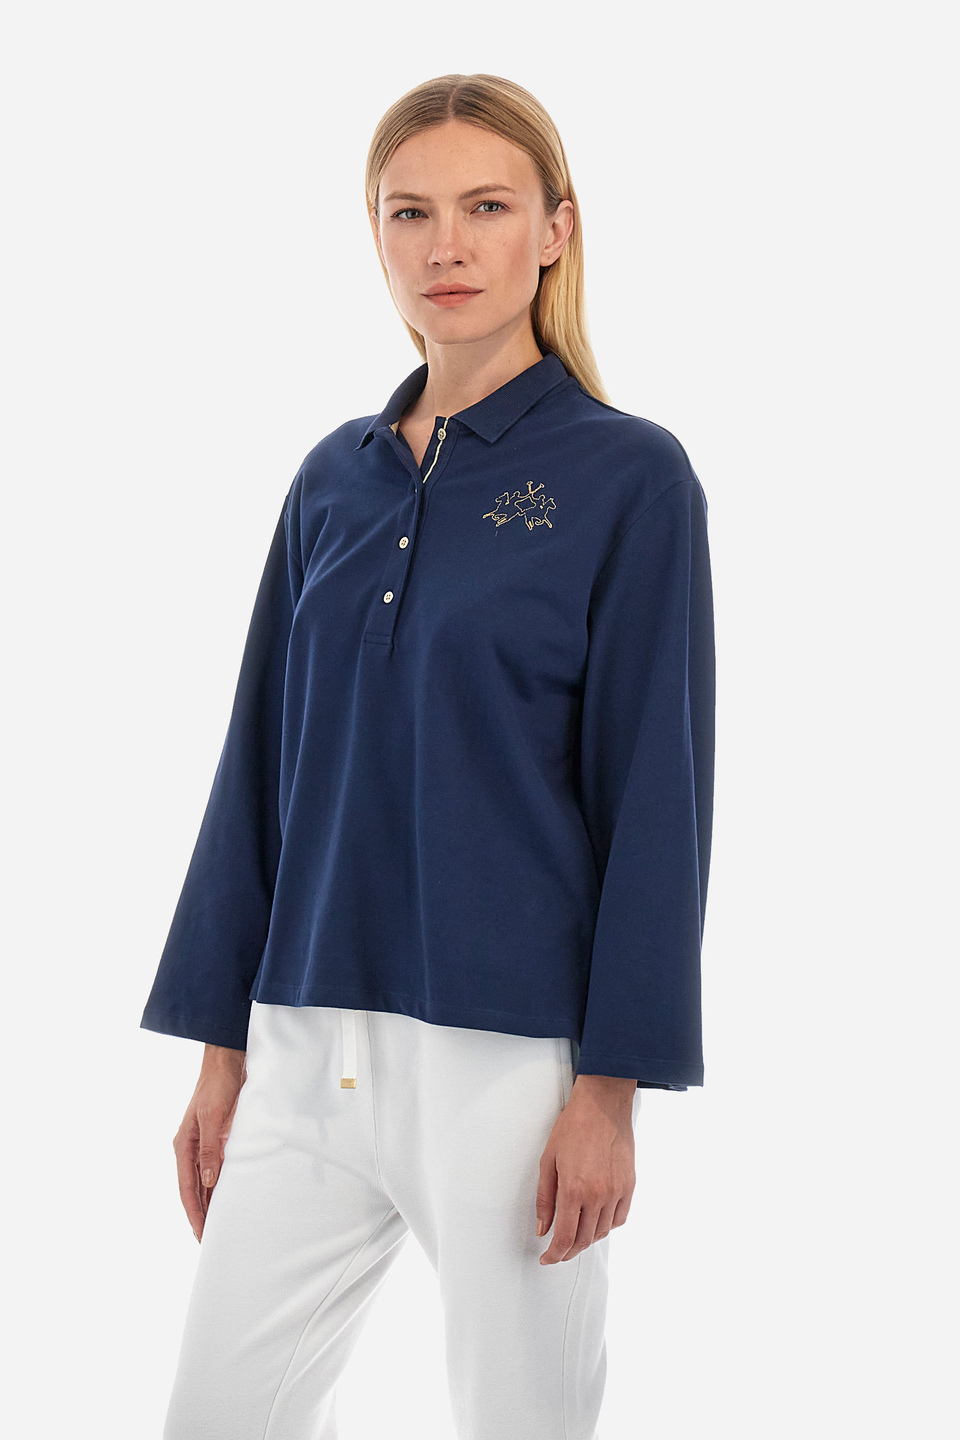 Damen -Poloshirt regular fit - Welch | La Martina - Official Online Shop